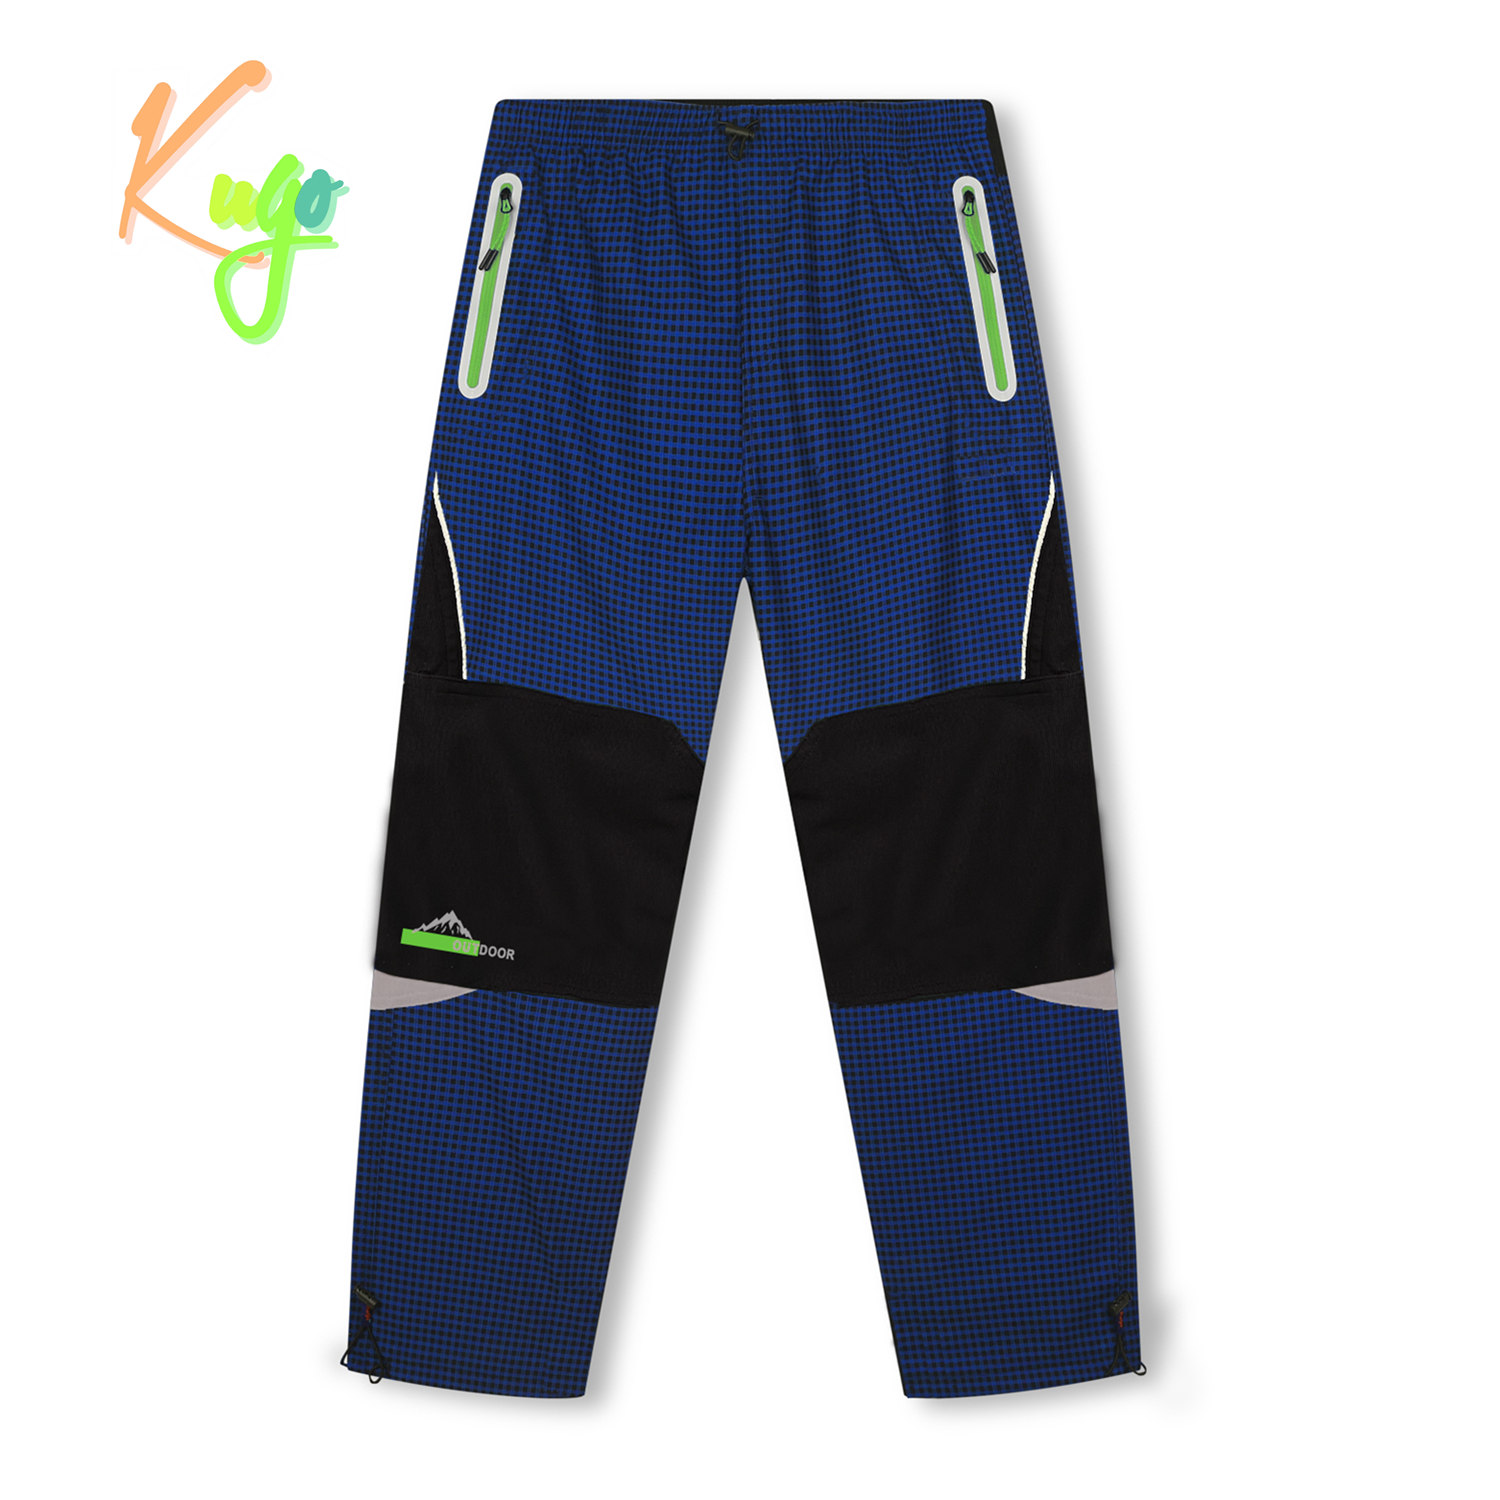 Chlapecké zateplené outdoorové kalhoty - KUGO C7772, modrá/ zelené zipy Barva: Modrá, Velikost: 122